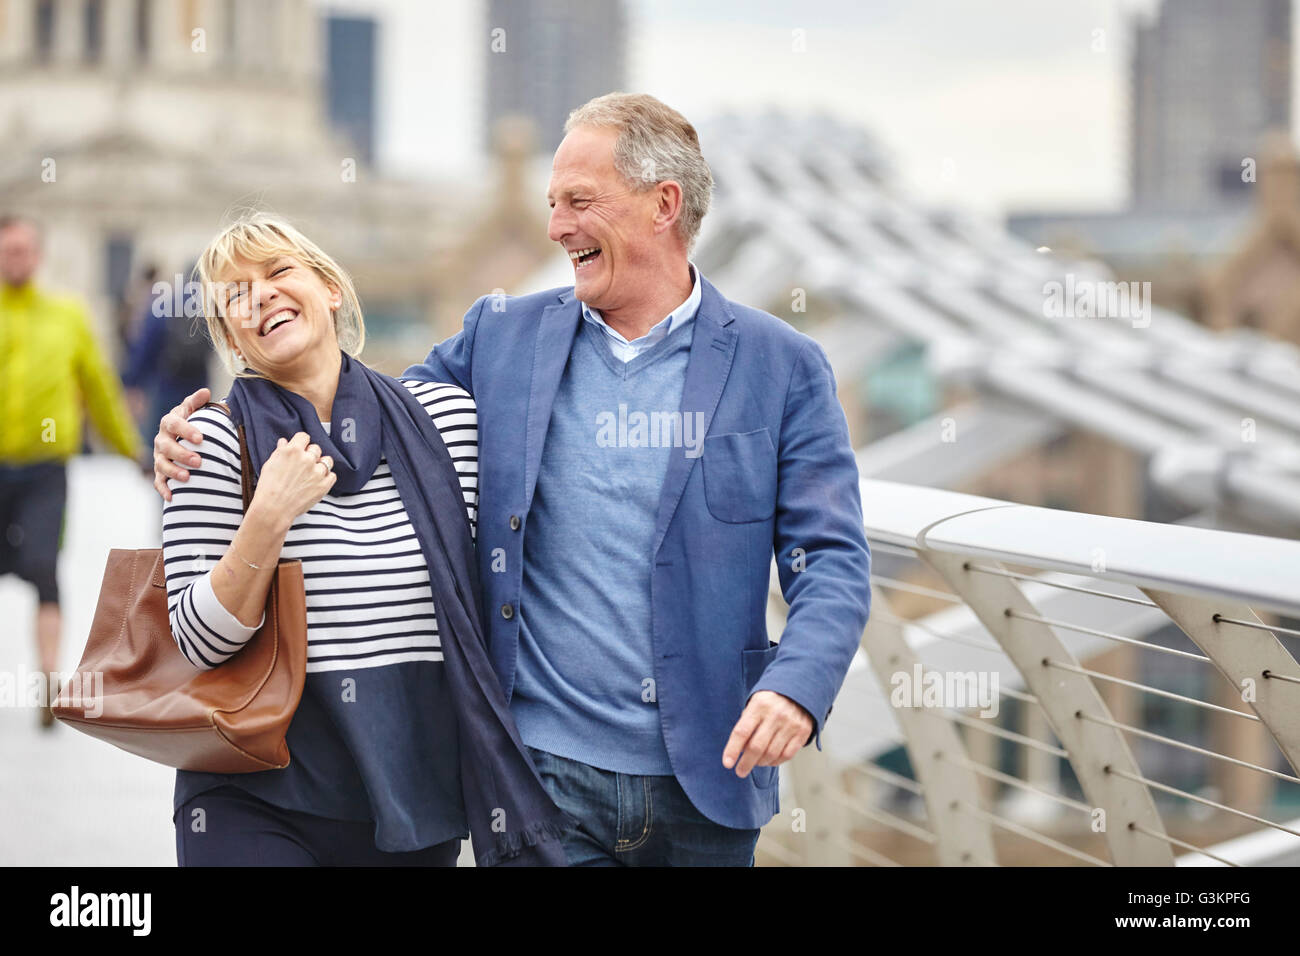 Mature Dating giovane ridere mentre crossing Millennium Bridge, London, Regno Unito Foto Stock